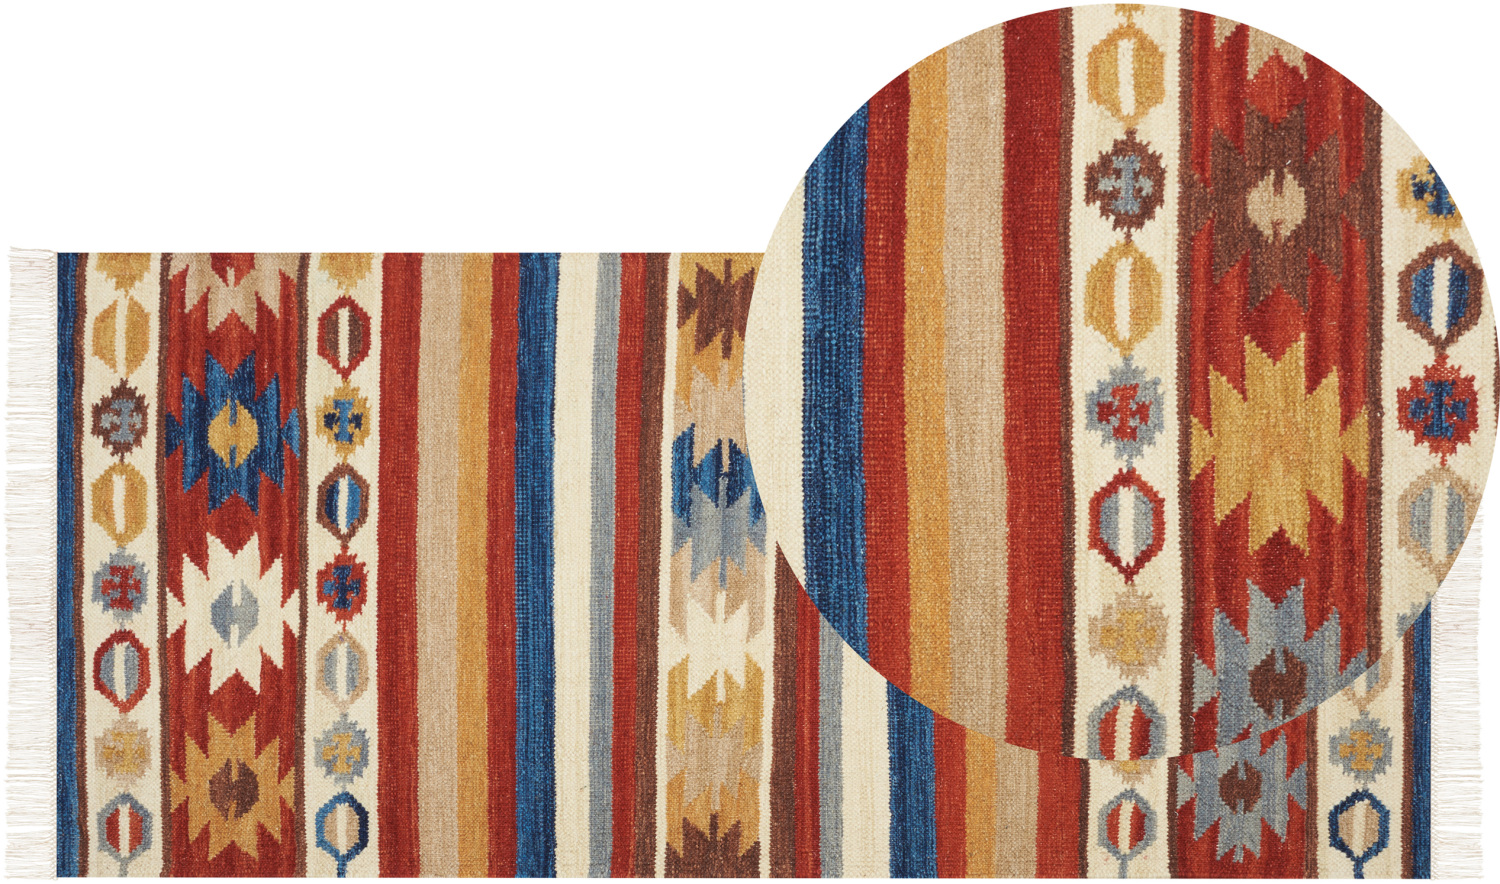 Kelim Teppich Wolle mehrfarbig 80 x 150 cm orientalisches Muster Kurzflor JRARAT Bild 1